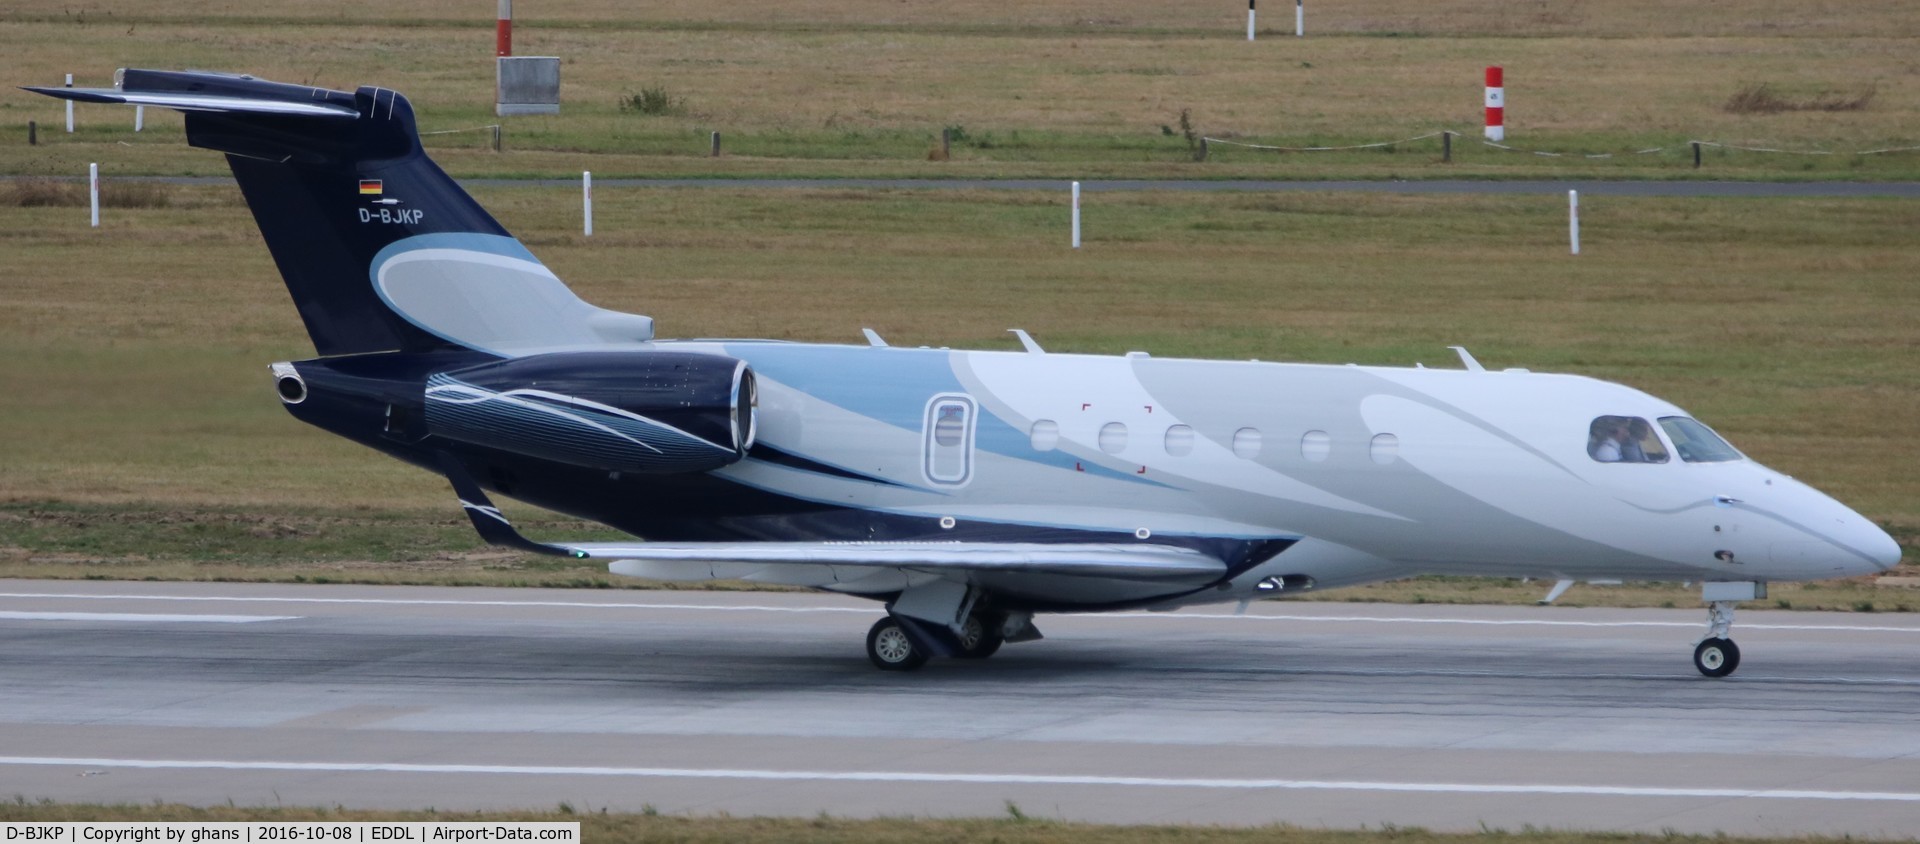 D-BJKP, 2012 Embraer EMB-550 Legacy 500 C/N 55000003, Taking-off